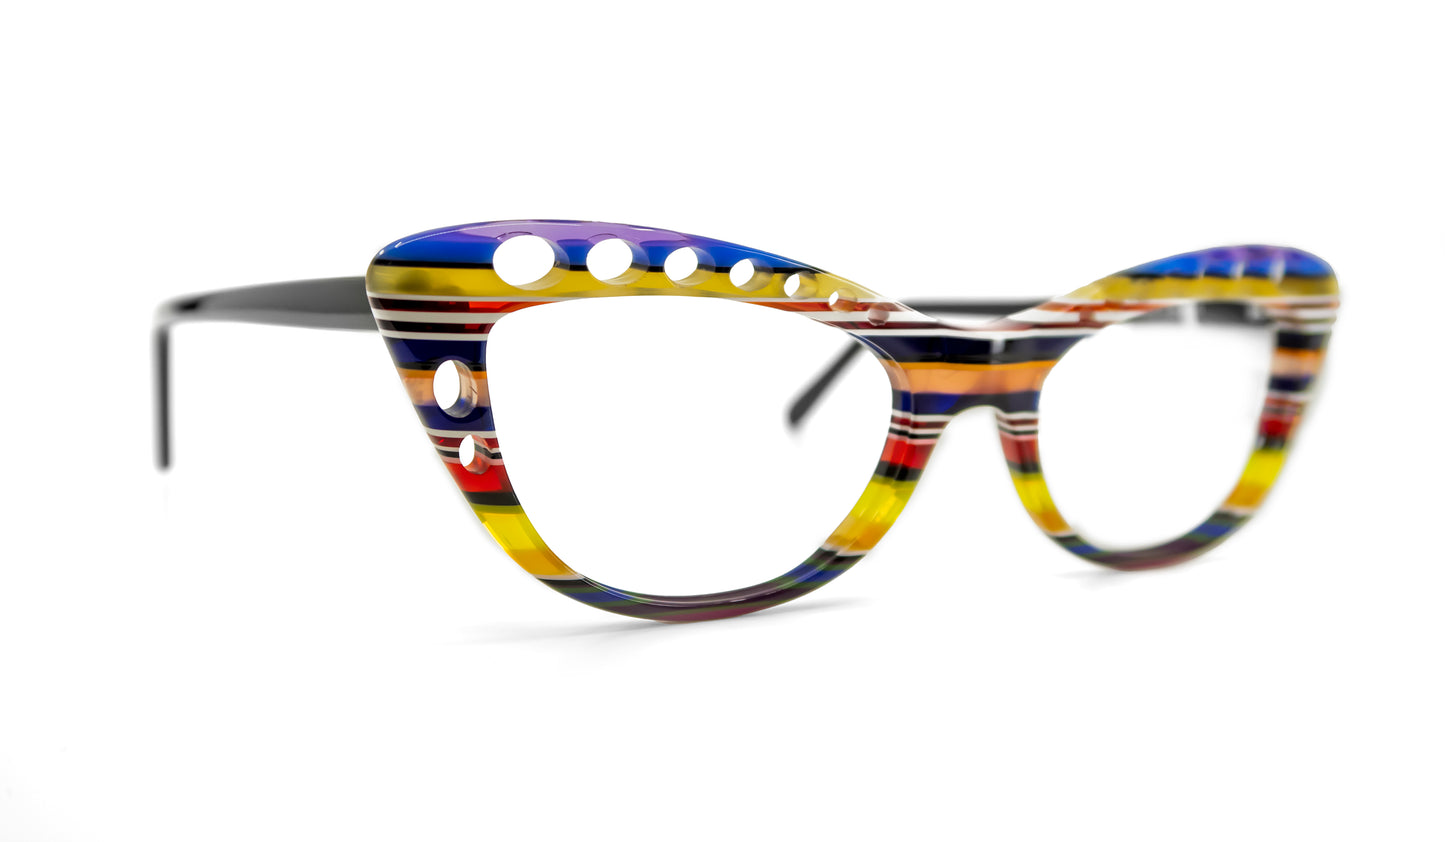 Cateye 3048 by La Bleu Frames Glasses striped